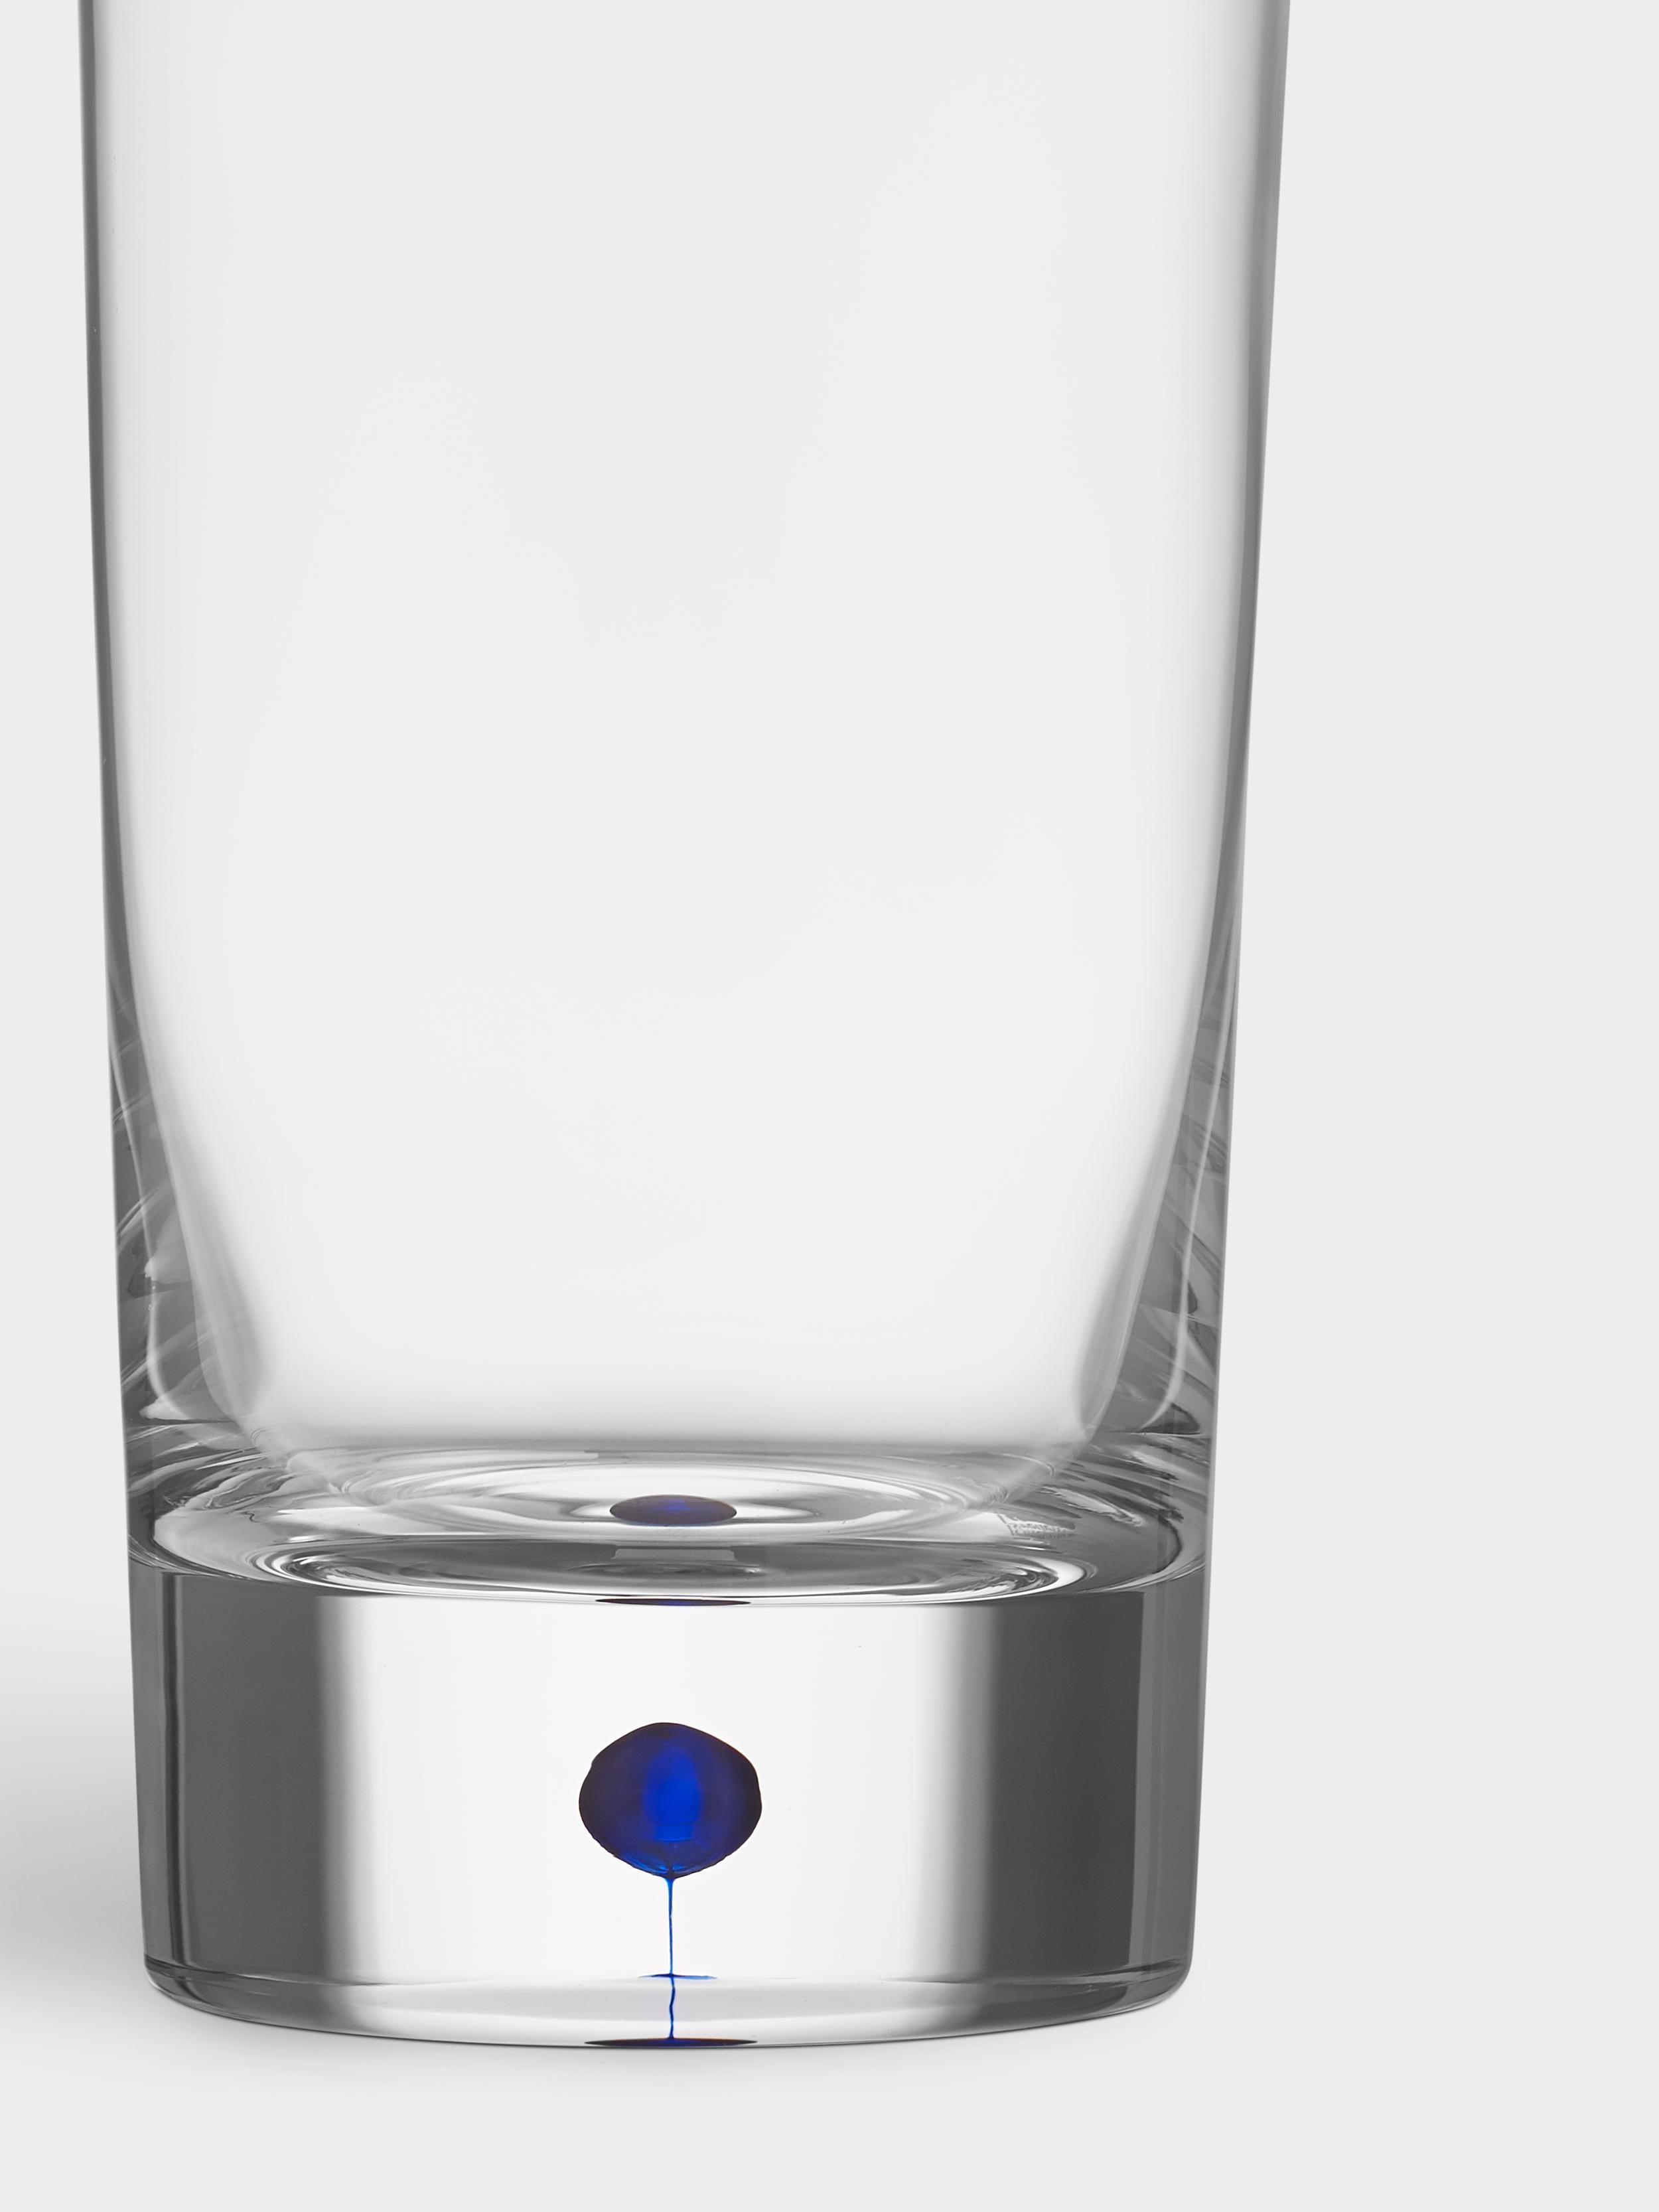 Intermezzo Tumbler von Orrefors wurde 1984 entworfen. Das Glas, das 13 oz fasst, ist als Highball-Glas für Mixgetränke mit oder ohne Alkohol gedacht. Intermezzo Tumbler wird in Schweden von erfahrenen Glasbläsern mundgeblasen und hat einen blauen